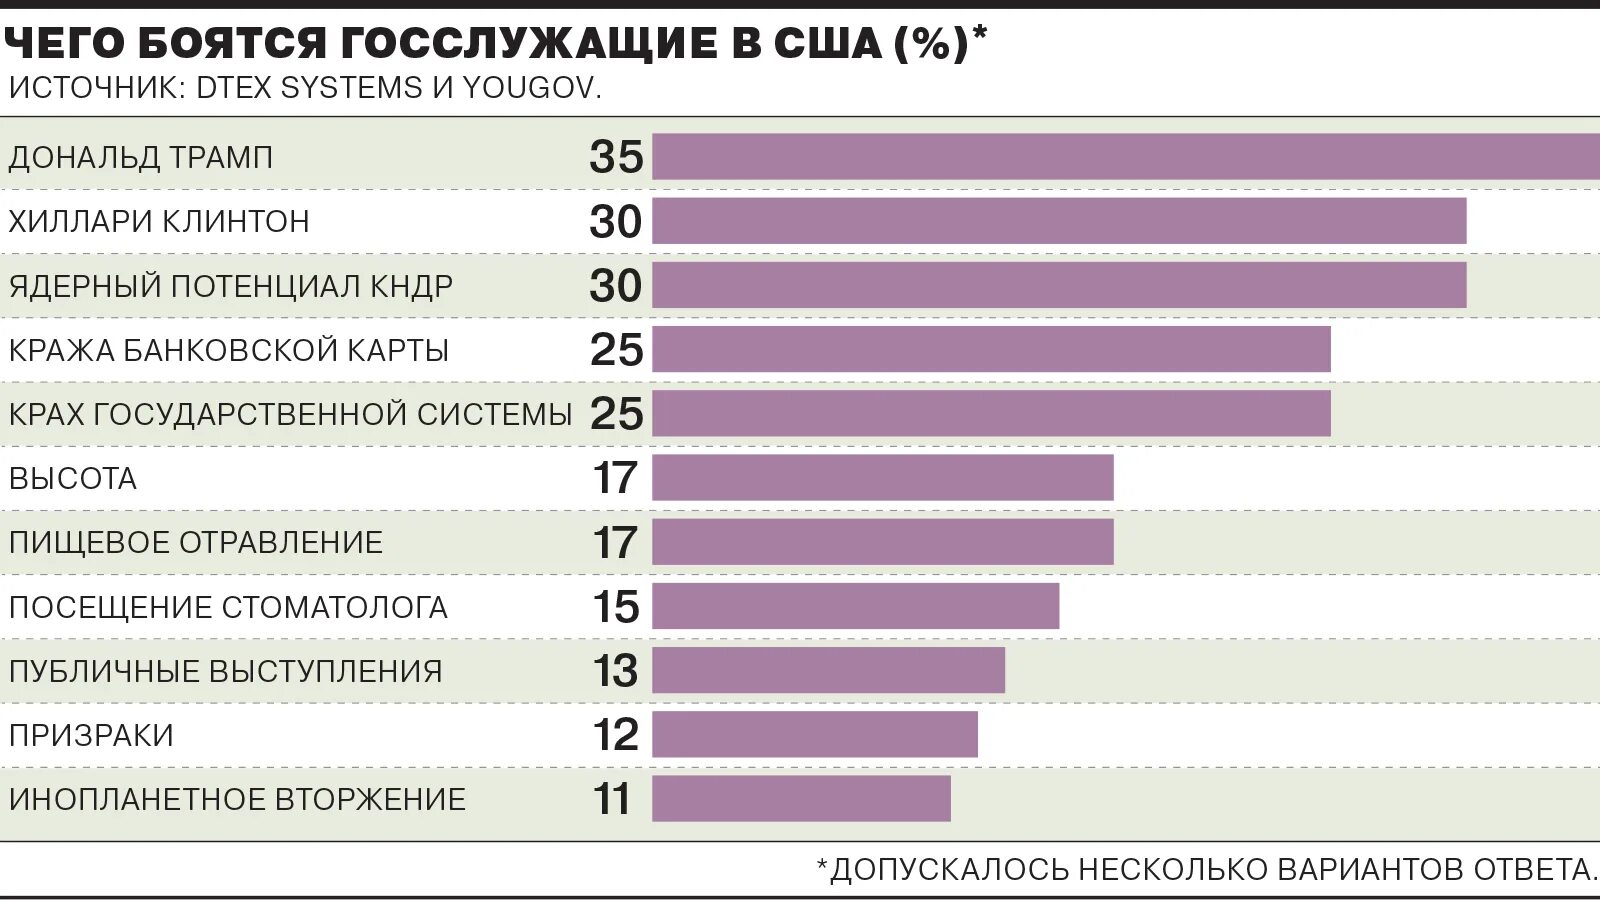 Сколько служащих в украине